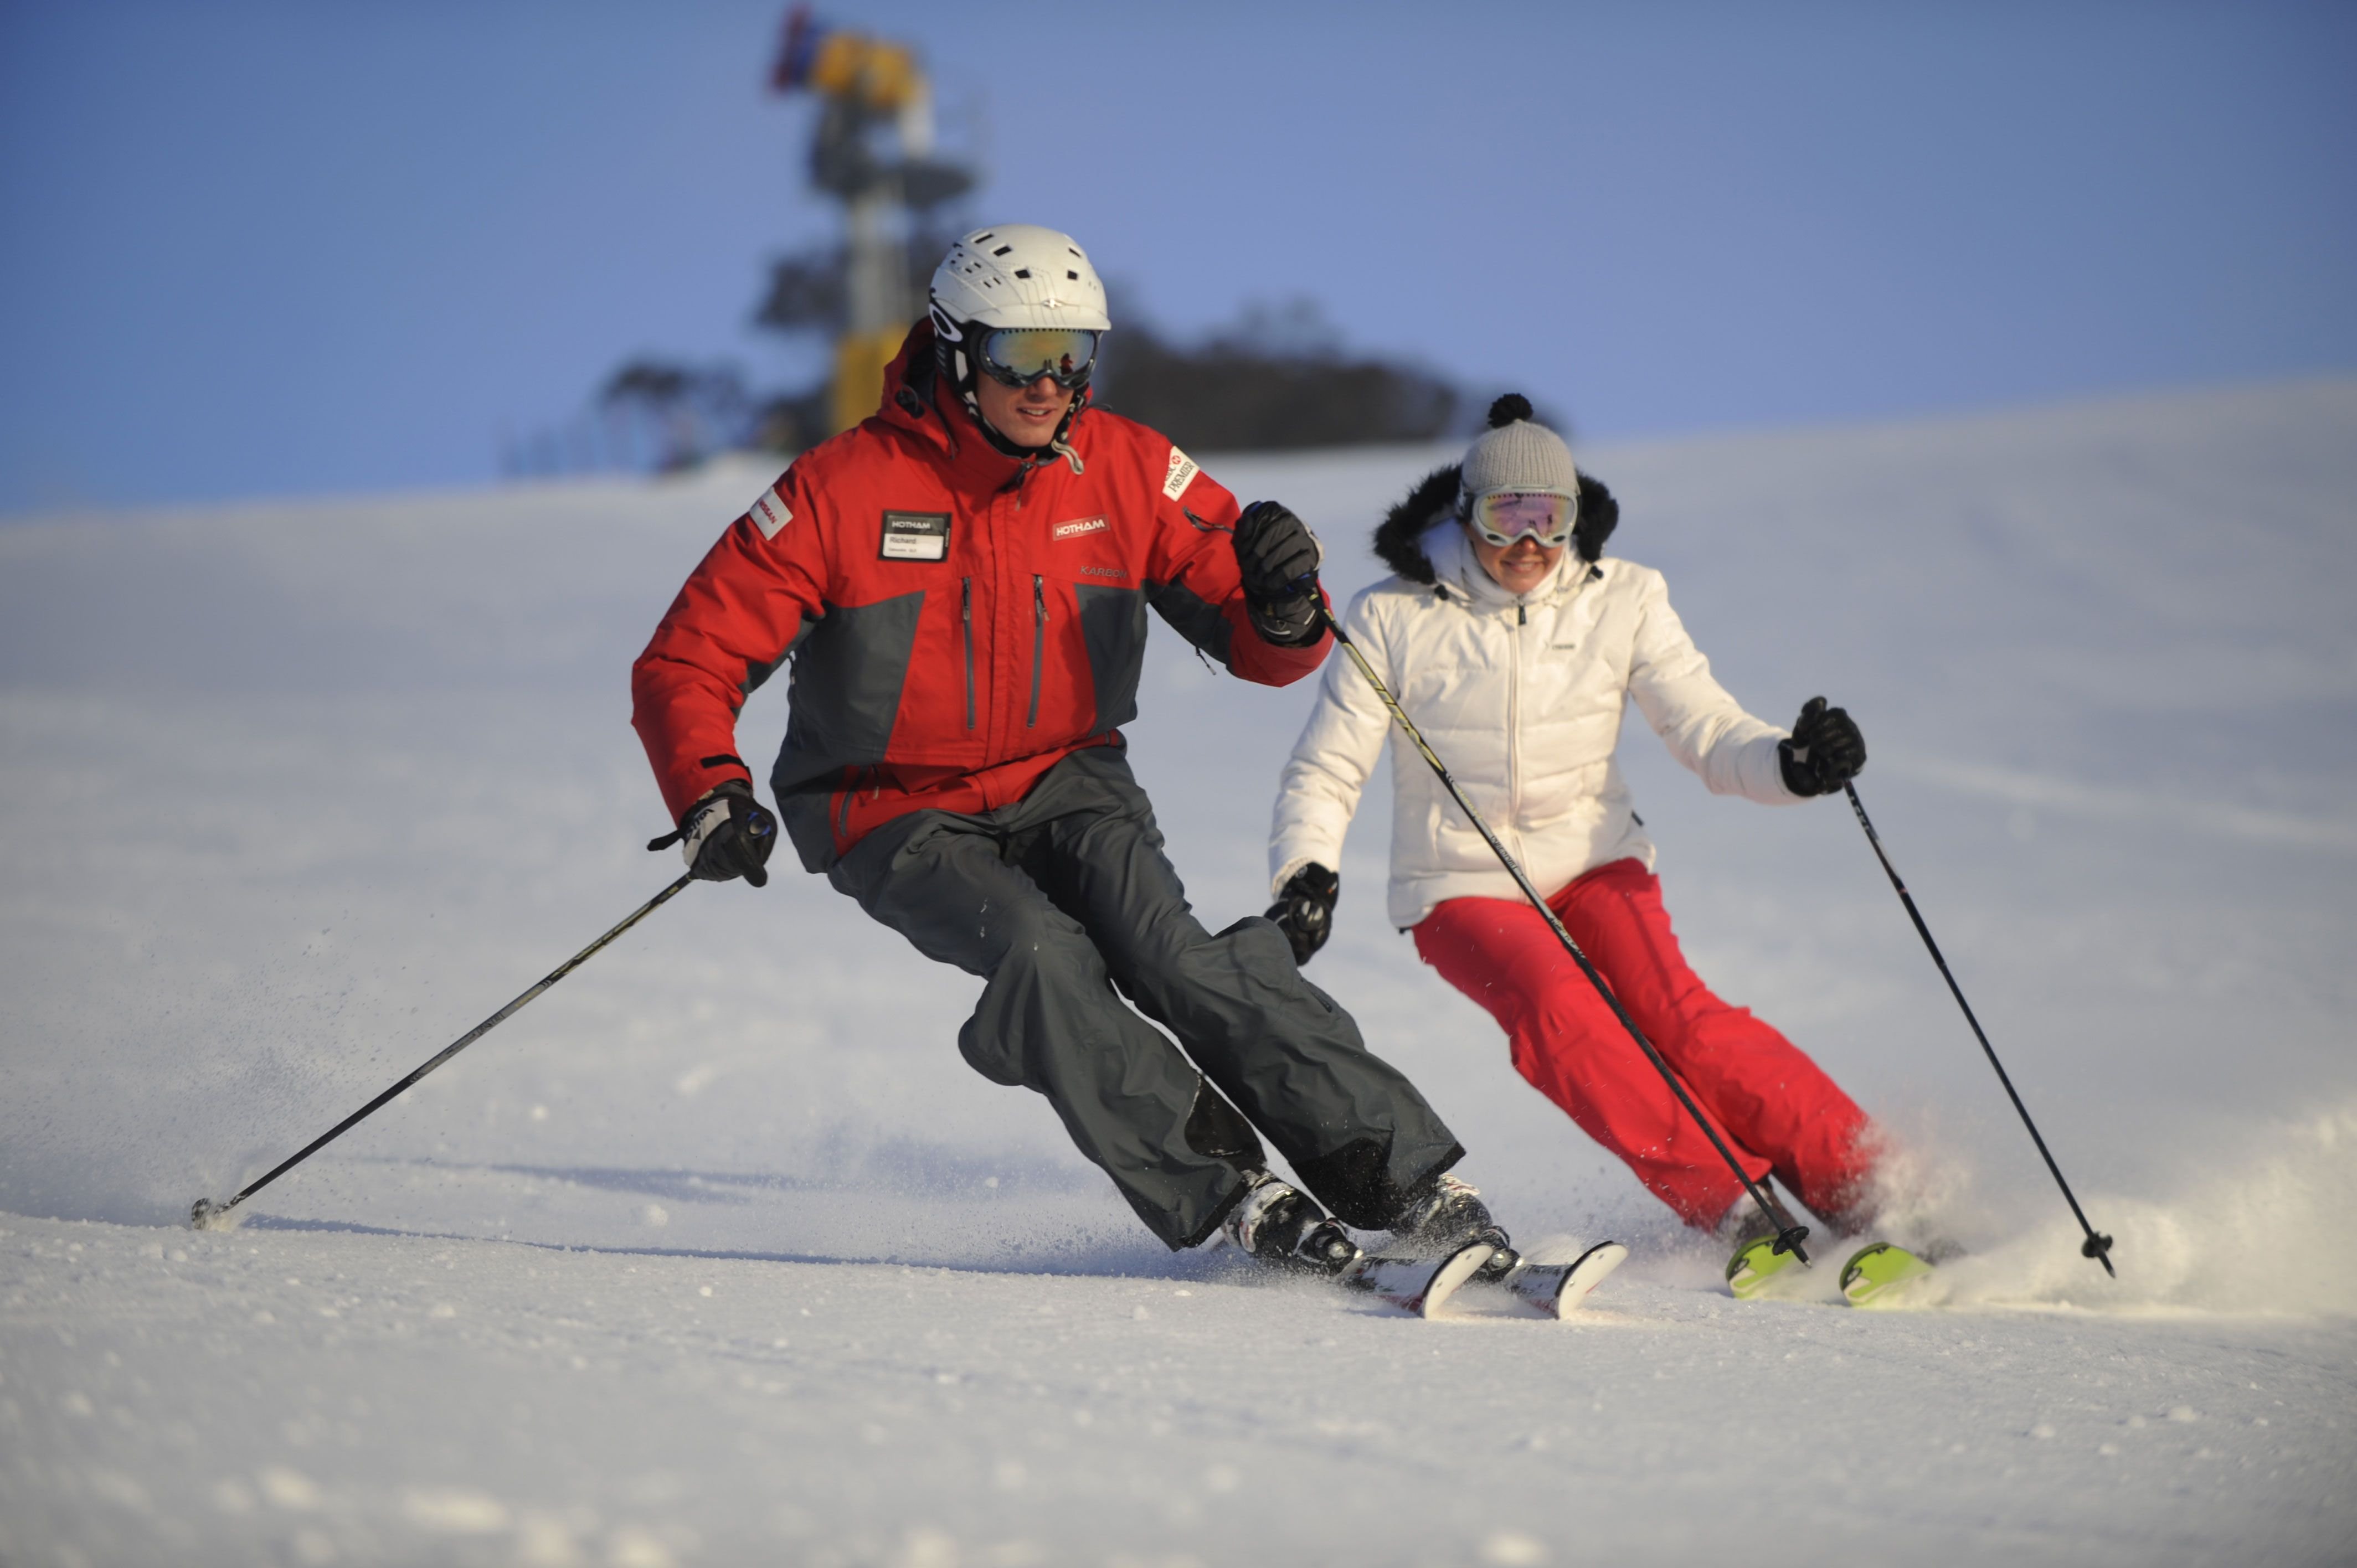 Покататься на горнолыжном курорте. Катание на лыжах. Горнолыжный спорт. Покататься на лыжах. Горные лыжи.